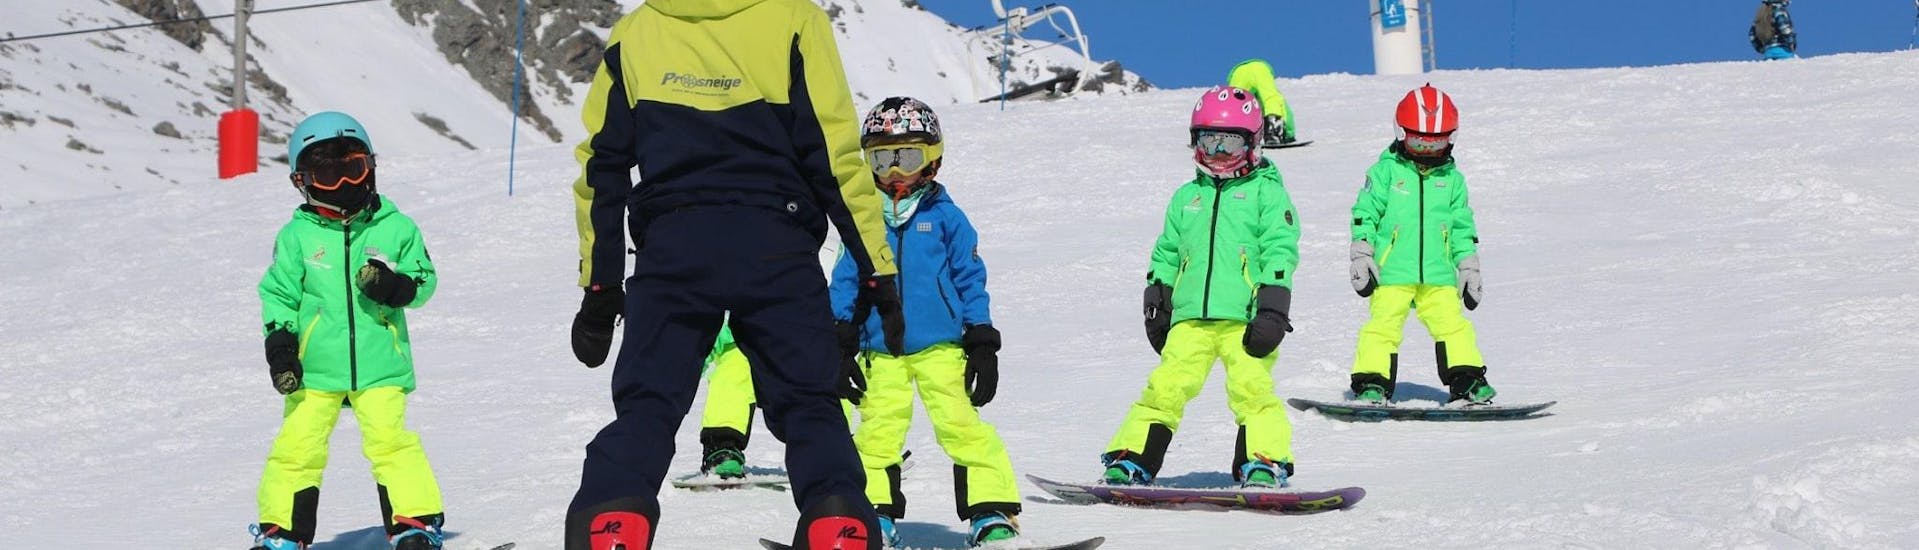 Un moniteur de ski de l´école de ski Prosneige Alpe d'Huez enseigne aux enfants en souriant pendant les Cours de snowboard pour Enfants (5-13 ans).